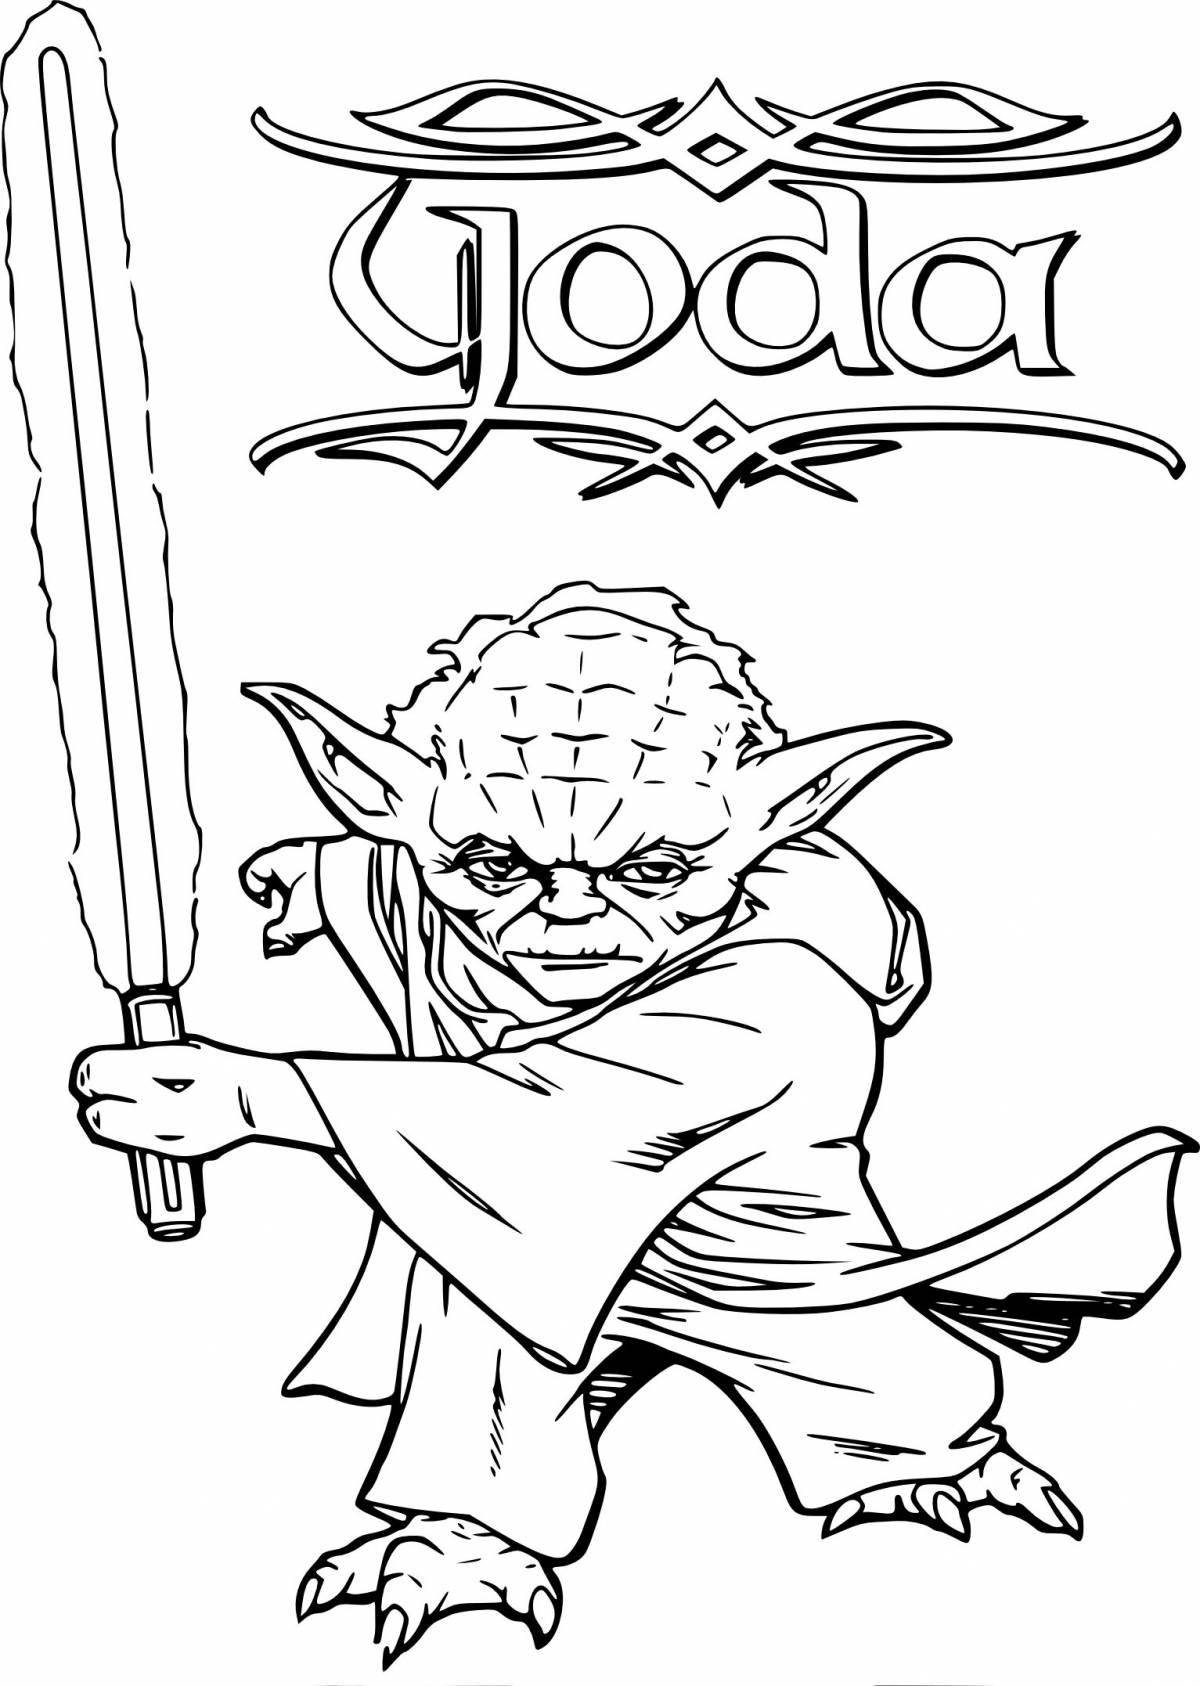 Royal master yoda coloring page